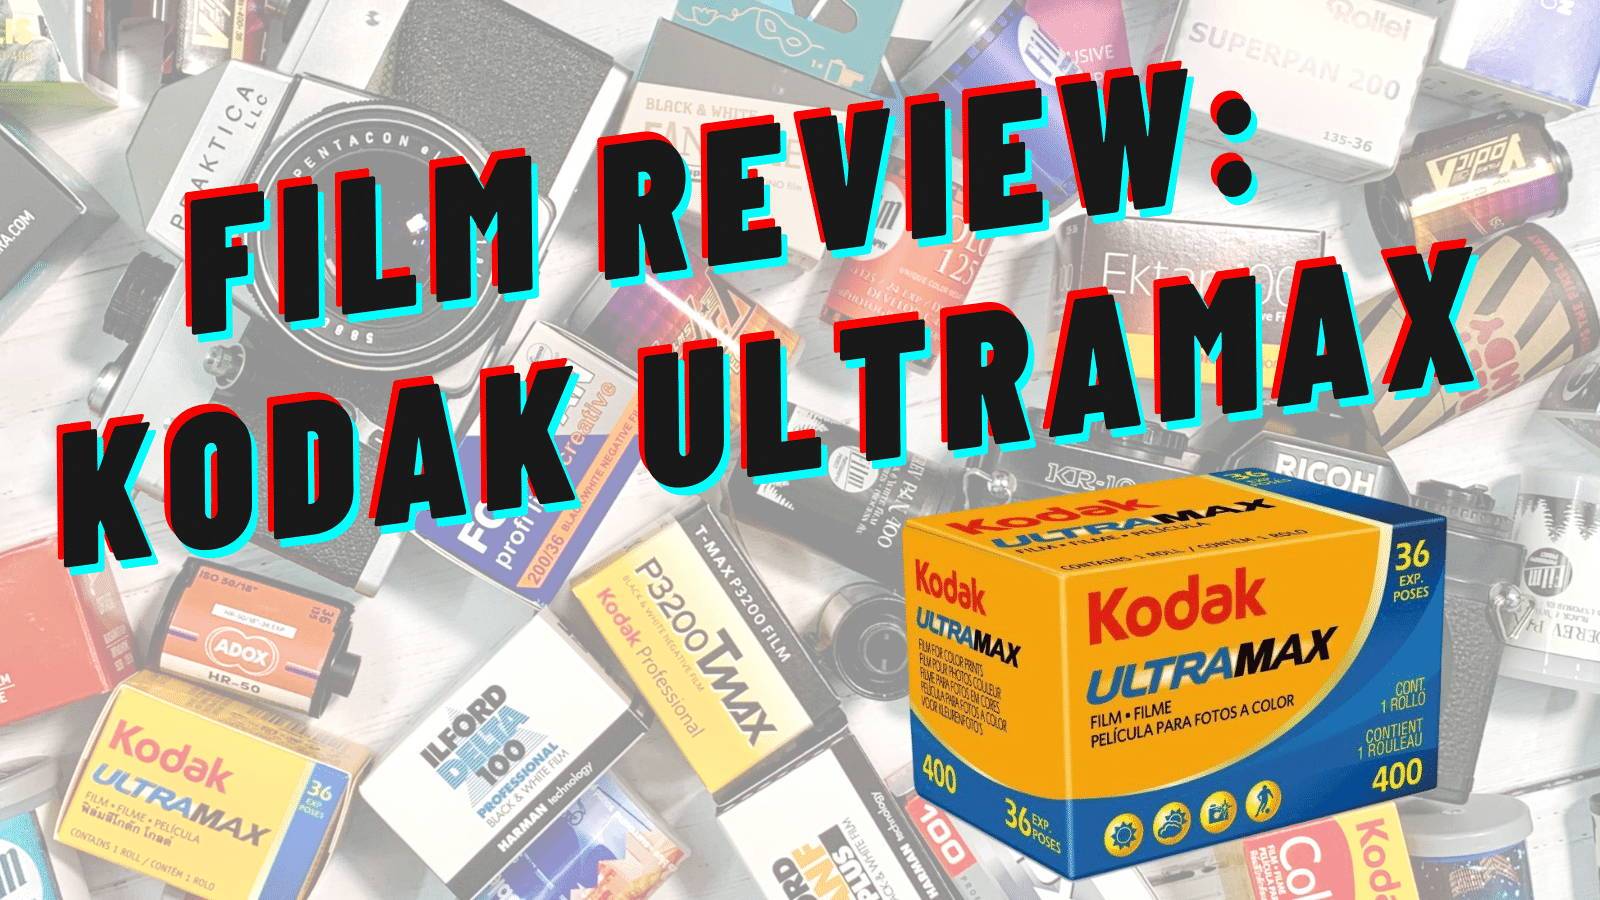 Kodak Ultramax 400 - 10 Reasons to Shoot + 50 Sample Photos